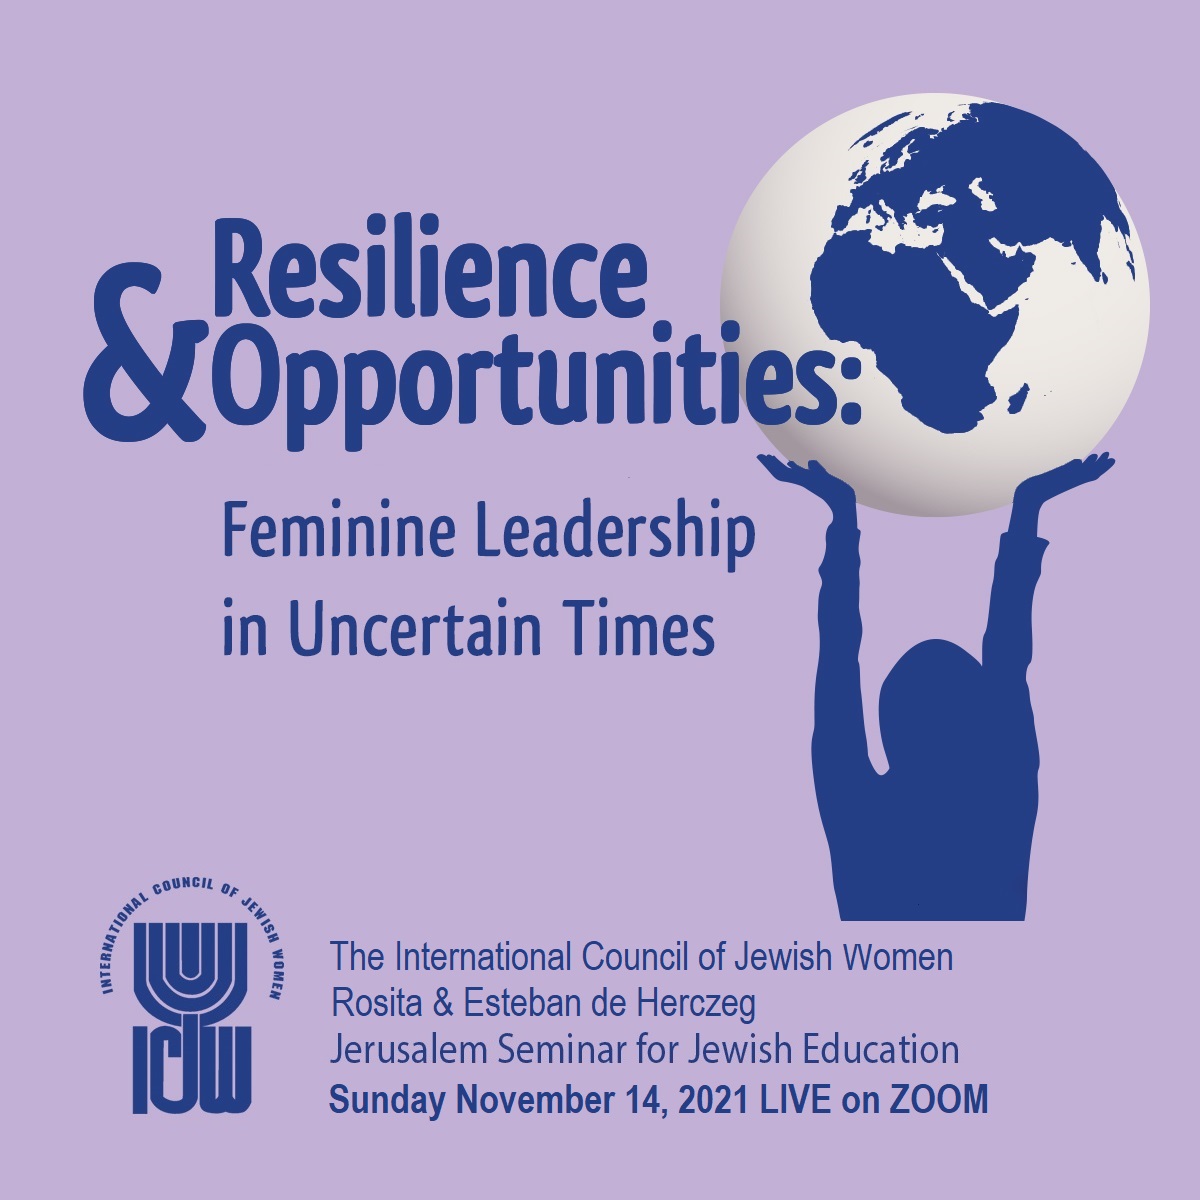 ICJW Seminar on Feminine Leadership